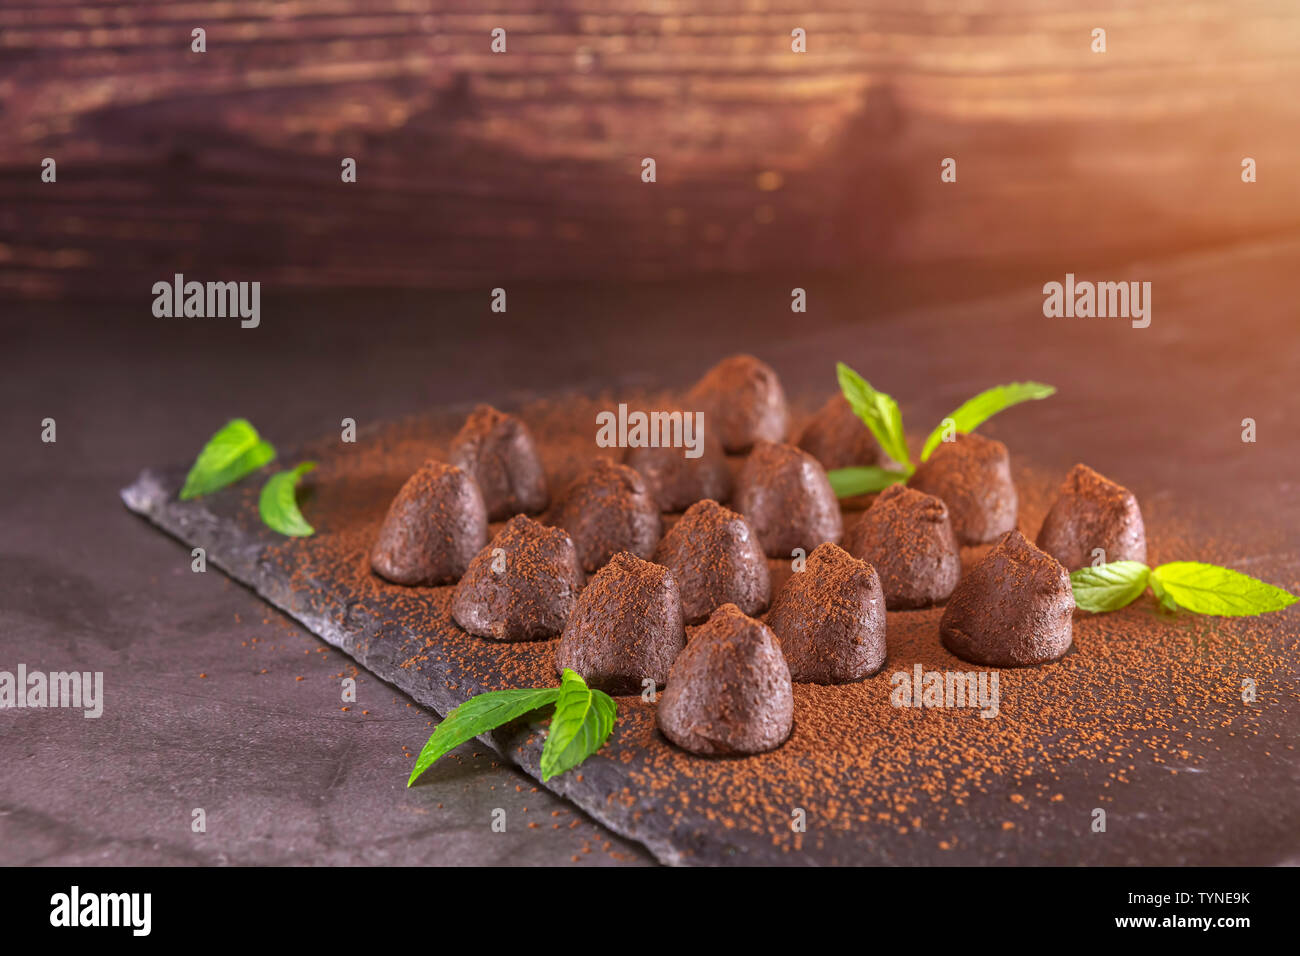 Truffes au chocolat maison à la menthe saupoudré de poudre de cacao sur ardoise. Se concentrer sur les truffes Banque D'Images